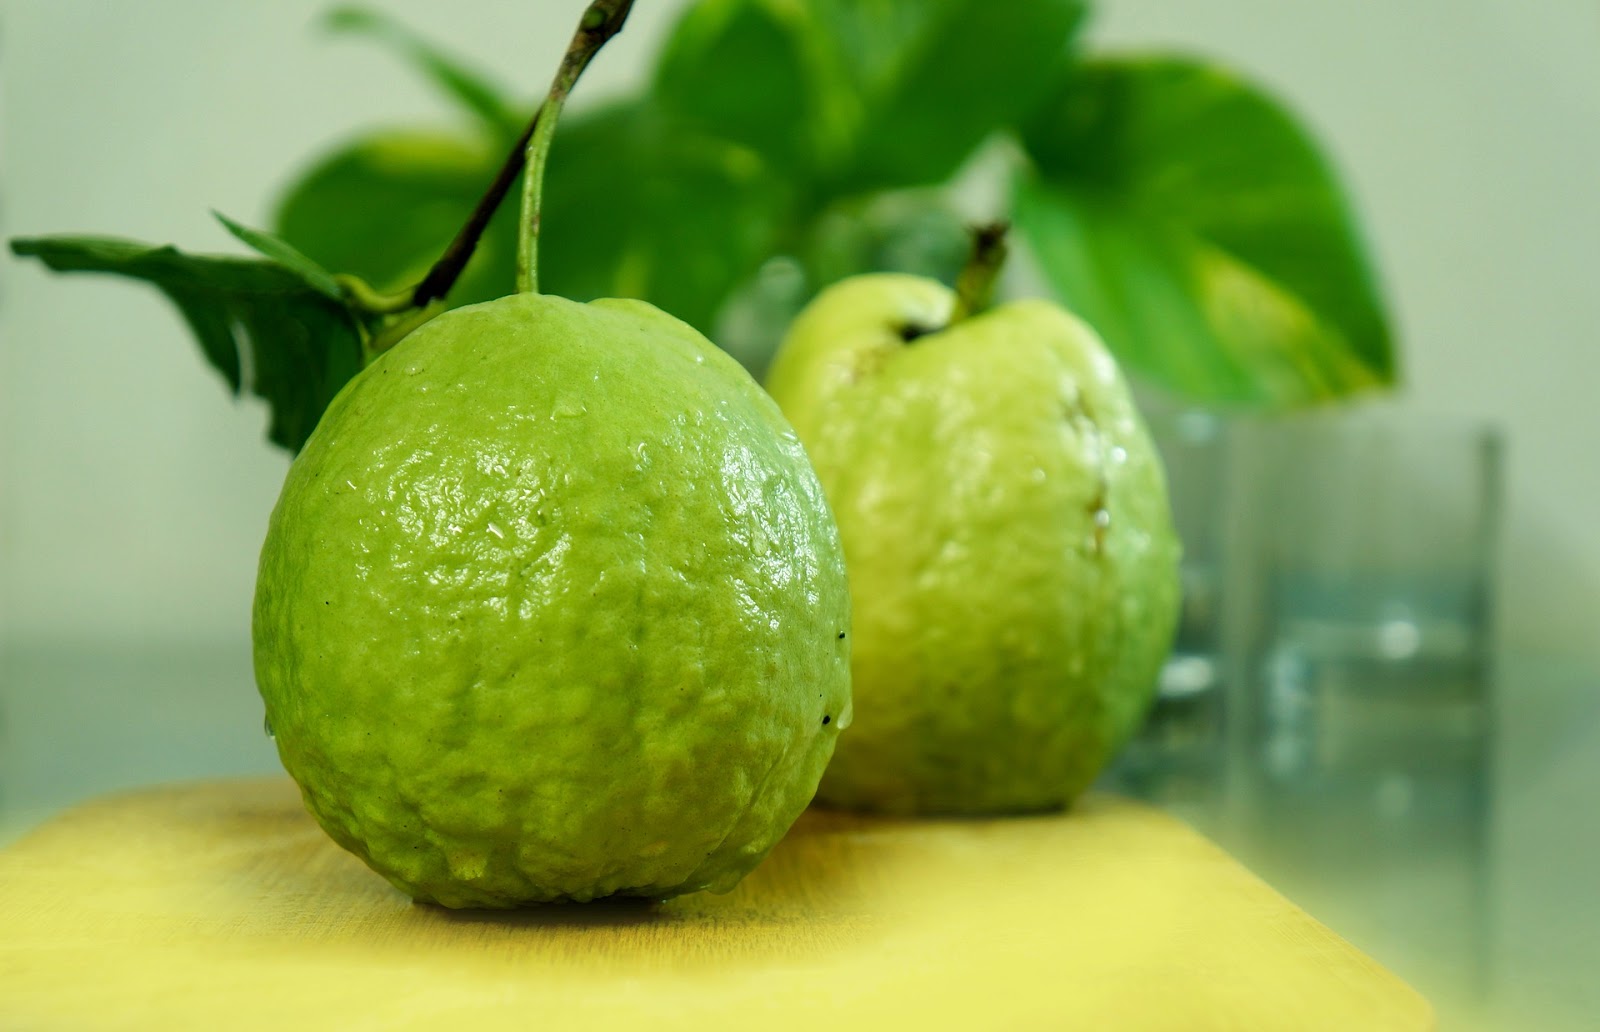 Guavano - ЁЯзб ╨Ш╨╗╨╗╤О╤Б╤В╤А╨░╤Ж╨╕╤П ╨░╨║╨▓╨░╤А╨╡╨╗╨╕ ╤А╨╛╨╖╨╛╨▓╨╛╨│╨╛ Guava ╨Ш╨╗╨╗╤О╤Б╤В╤А╨░╤Ж╨╕╤П ╤И╤В╨╛╨║╨░ - ╨╕╨╗╨╗╤О.